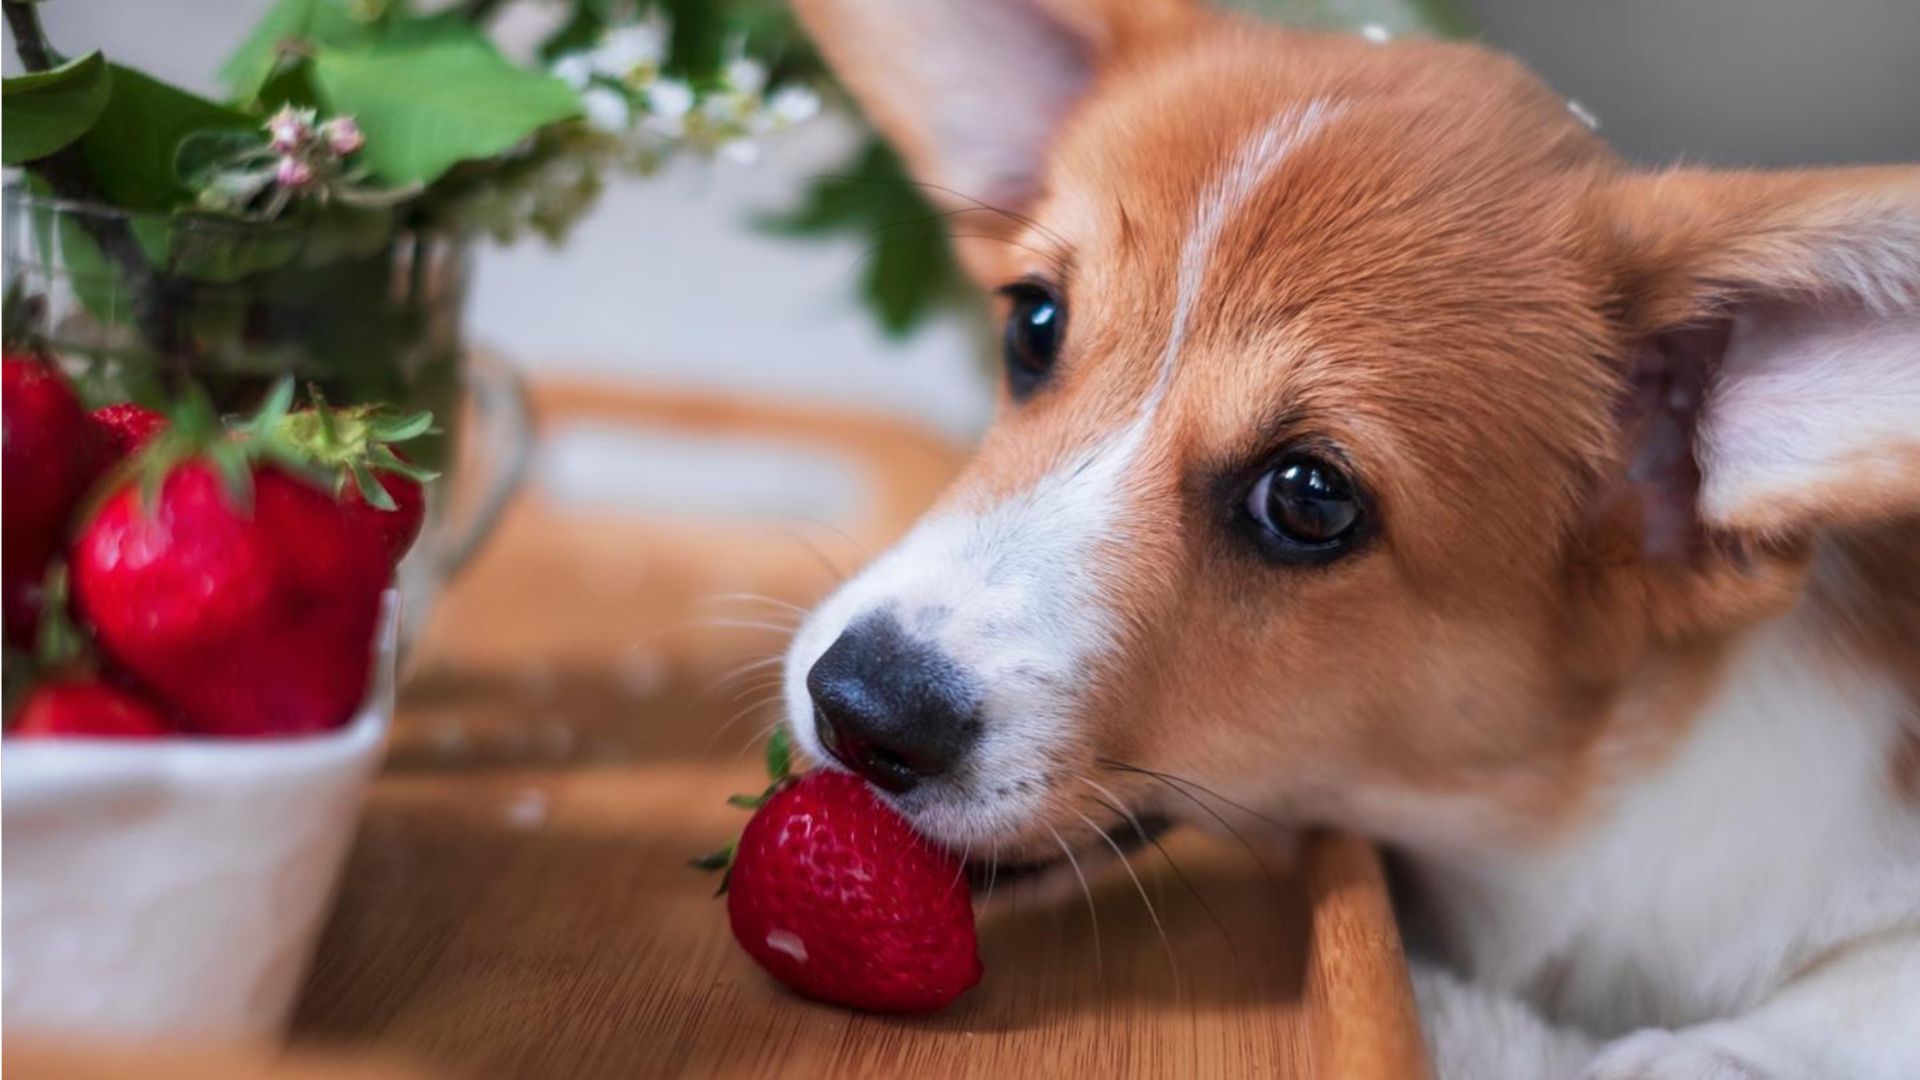 Dürfen Hunde Erdbeeren essen? Das sollten Sie wissen